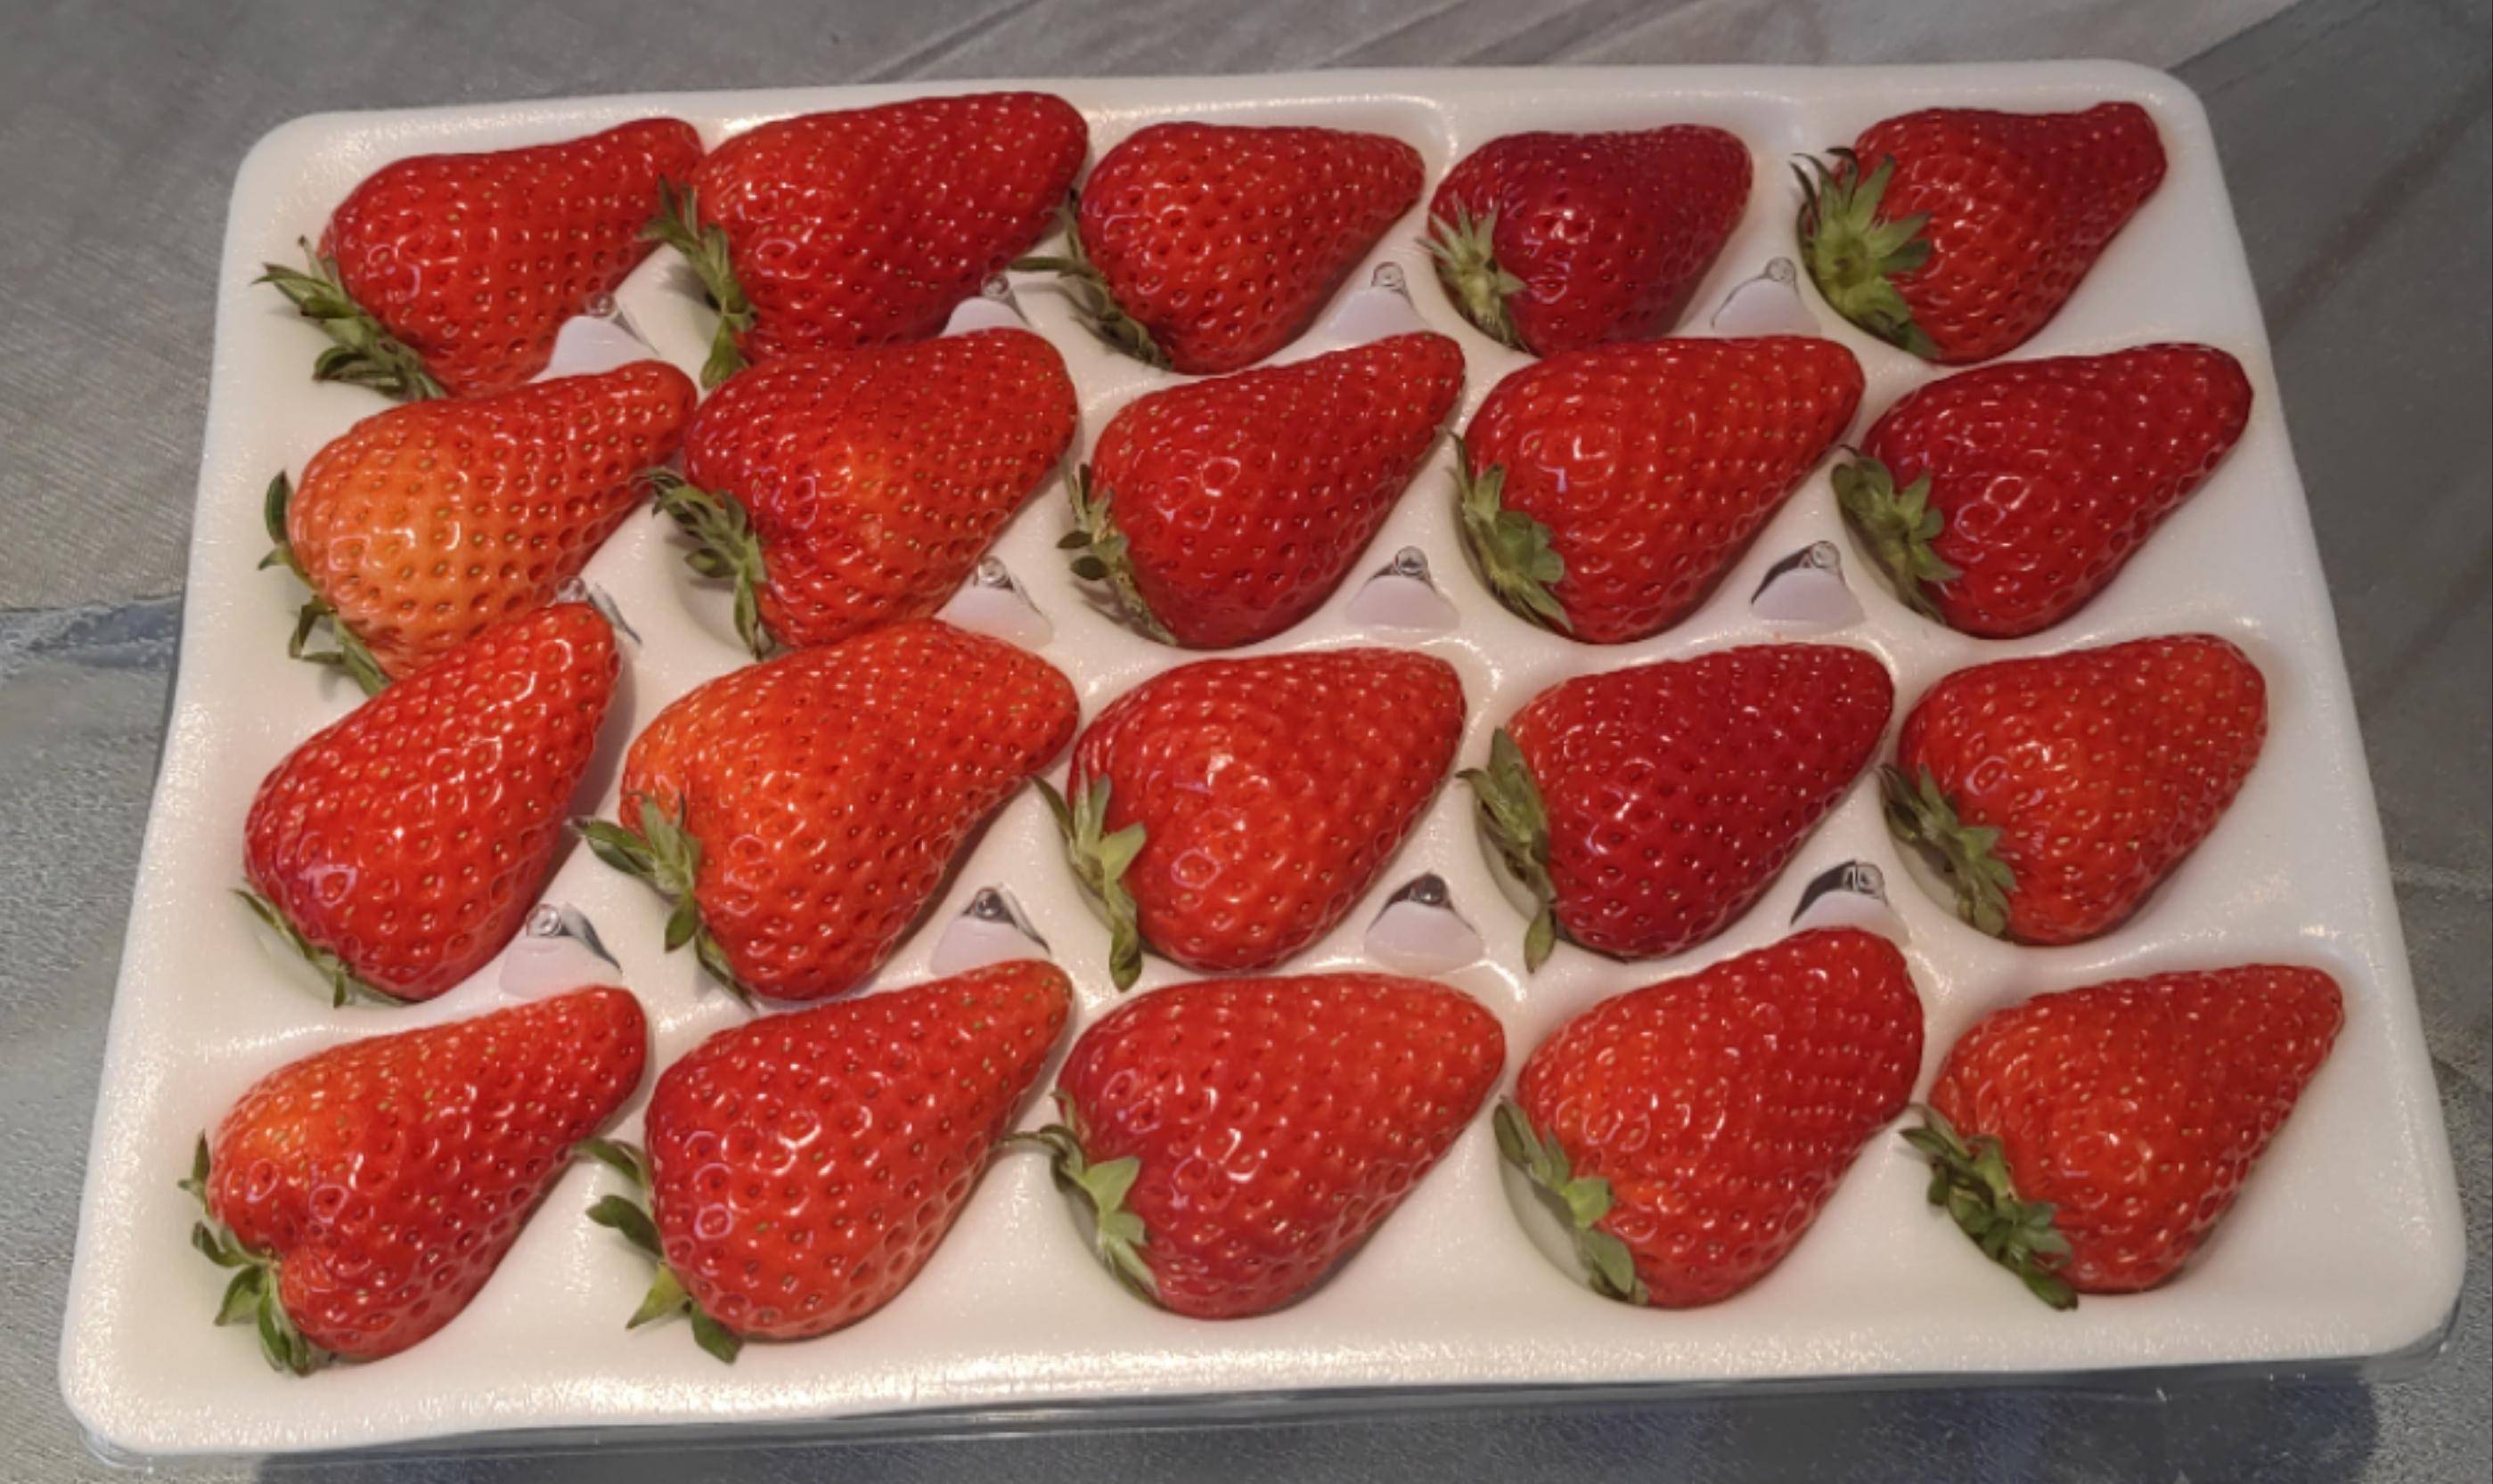 中莓香玉100万元嫁山东 郑果所完成第一例草莓新品种权使用权区域